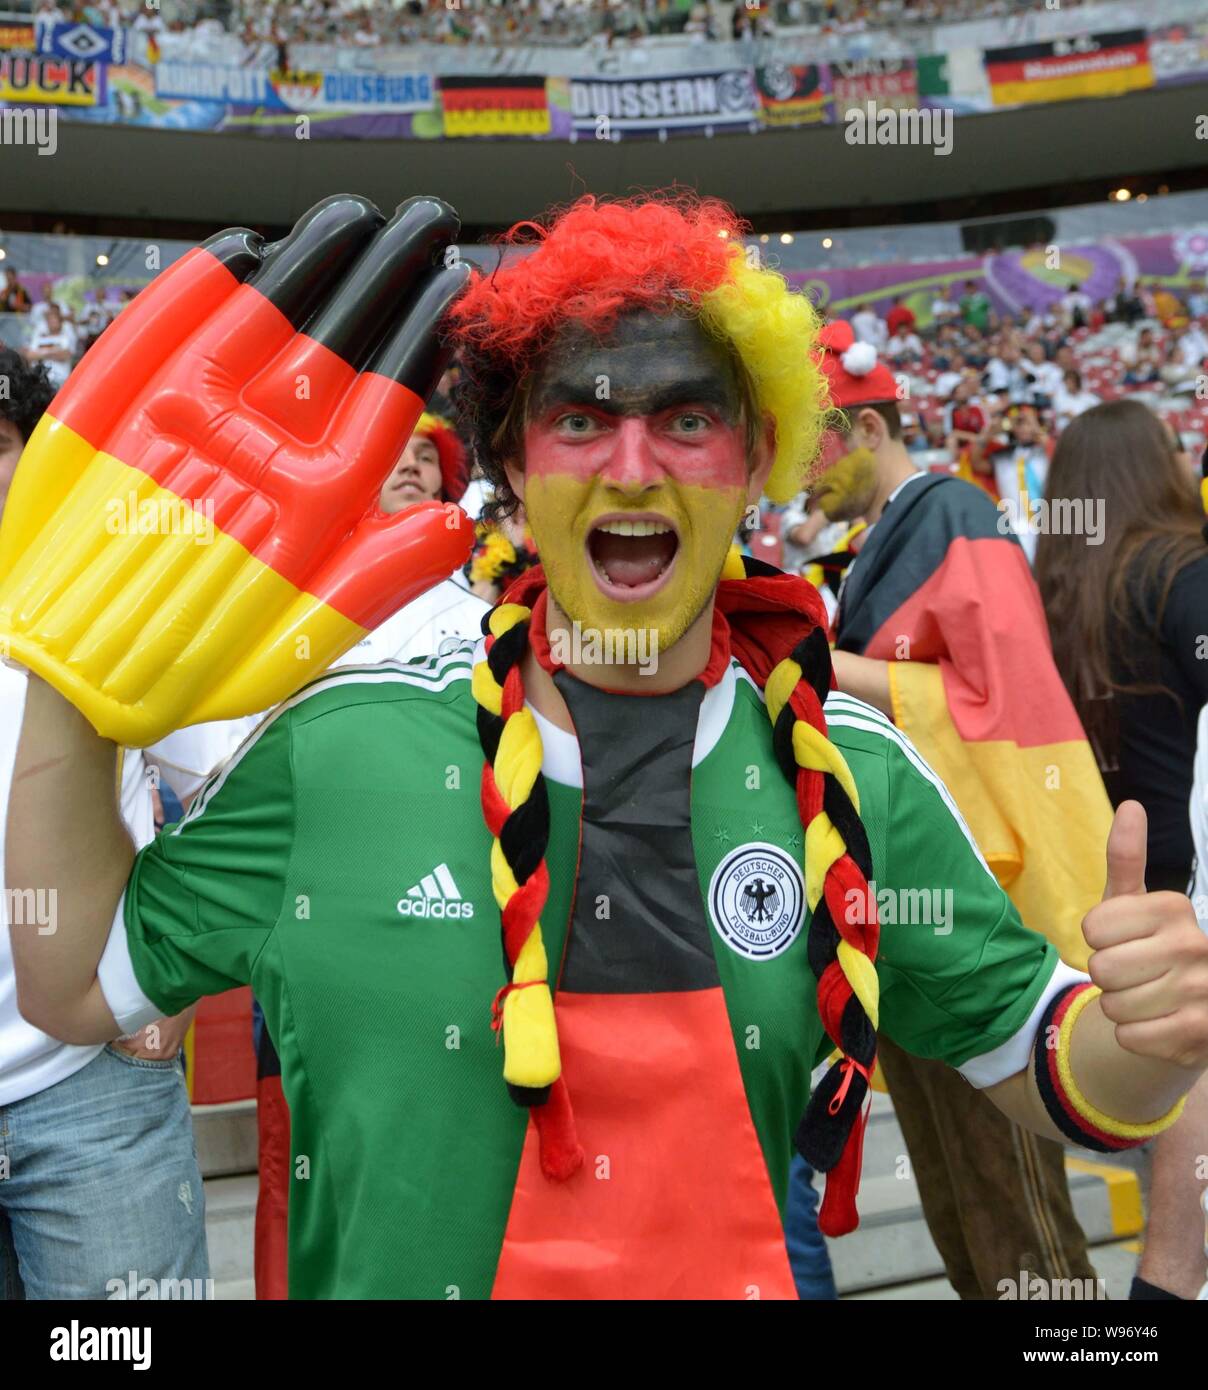 Un supporter de football d'Allemagne est photographié avant la demi-finale entre l'Italie et l'Allemagne au cours de l'UEFA Championnat d'Europe de football en 2012 dans les guerres Banque D'Images